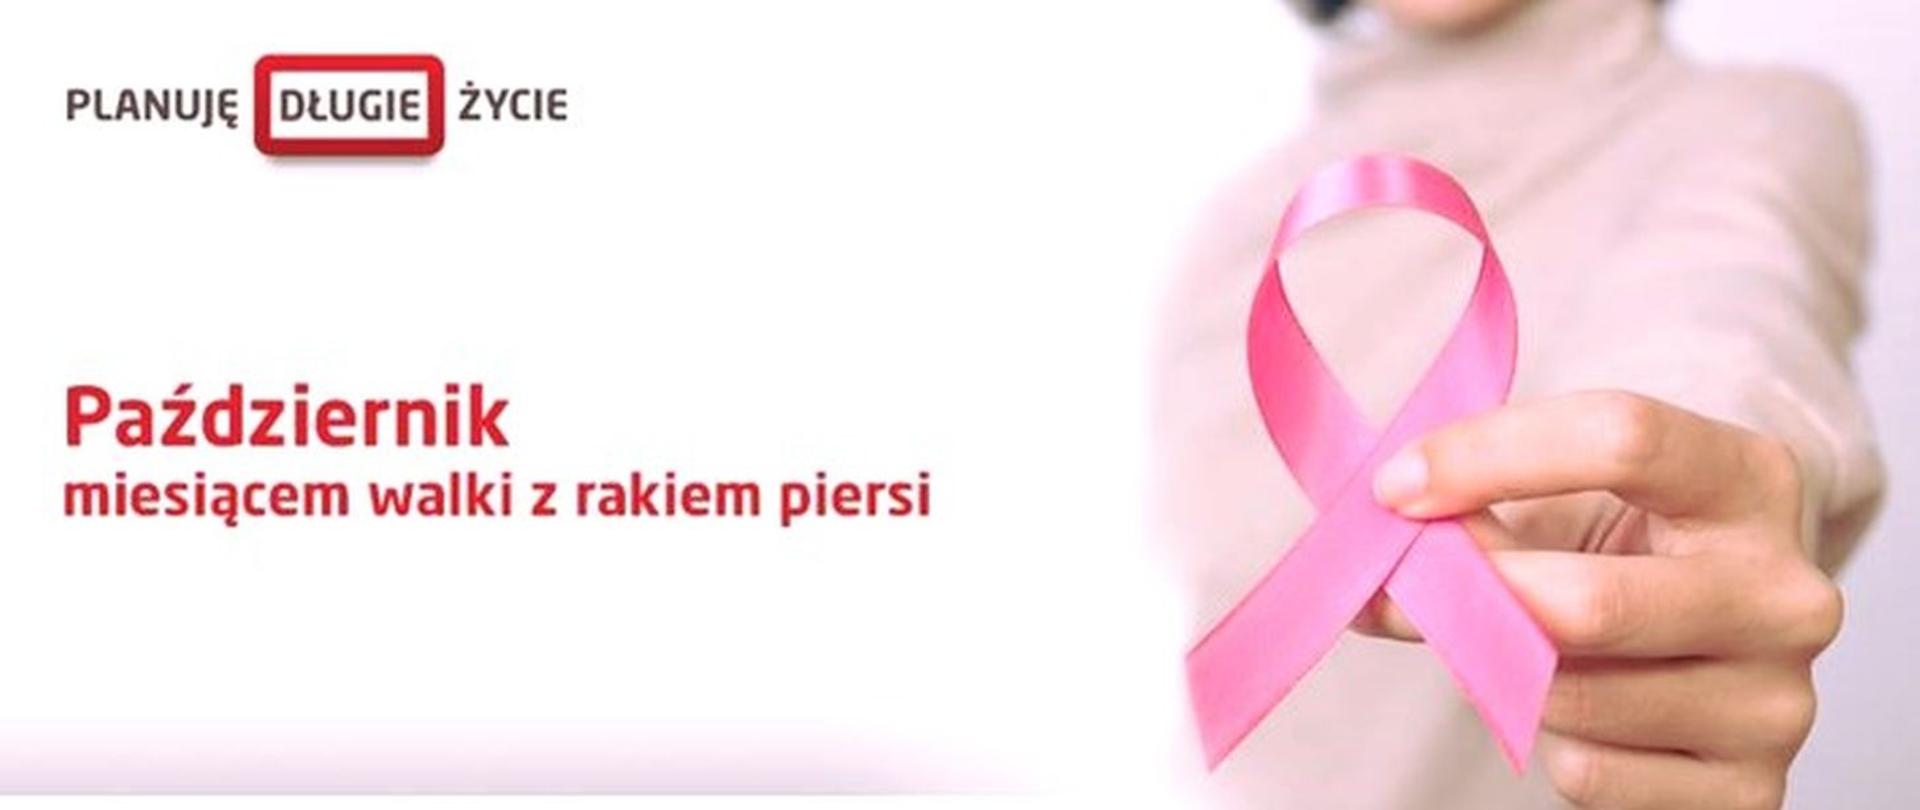 październik miesiącem walki z rakiem piersi